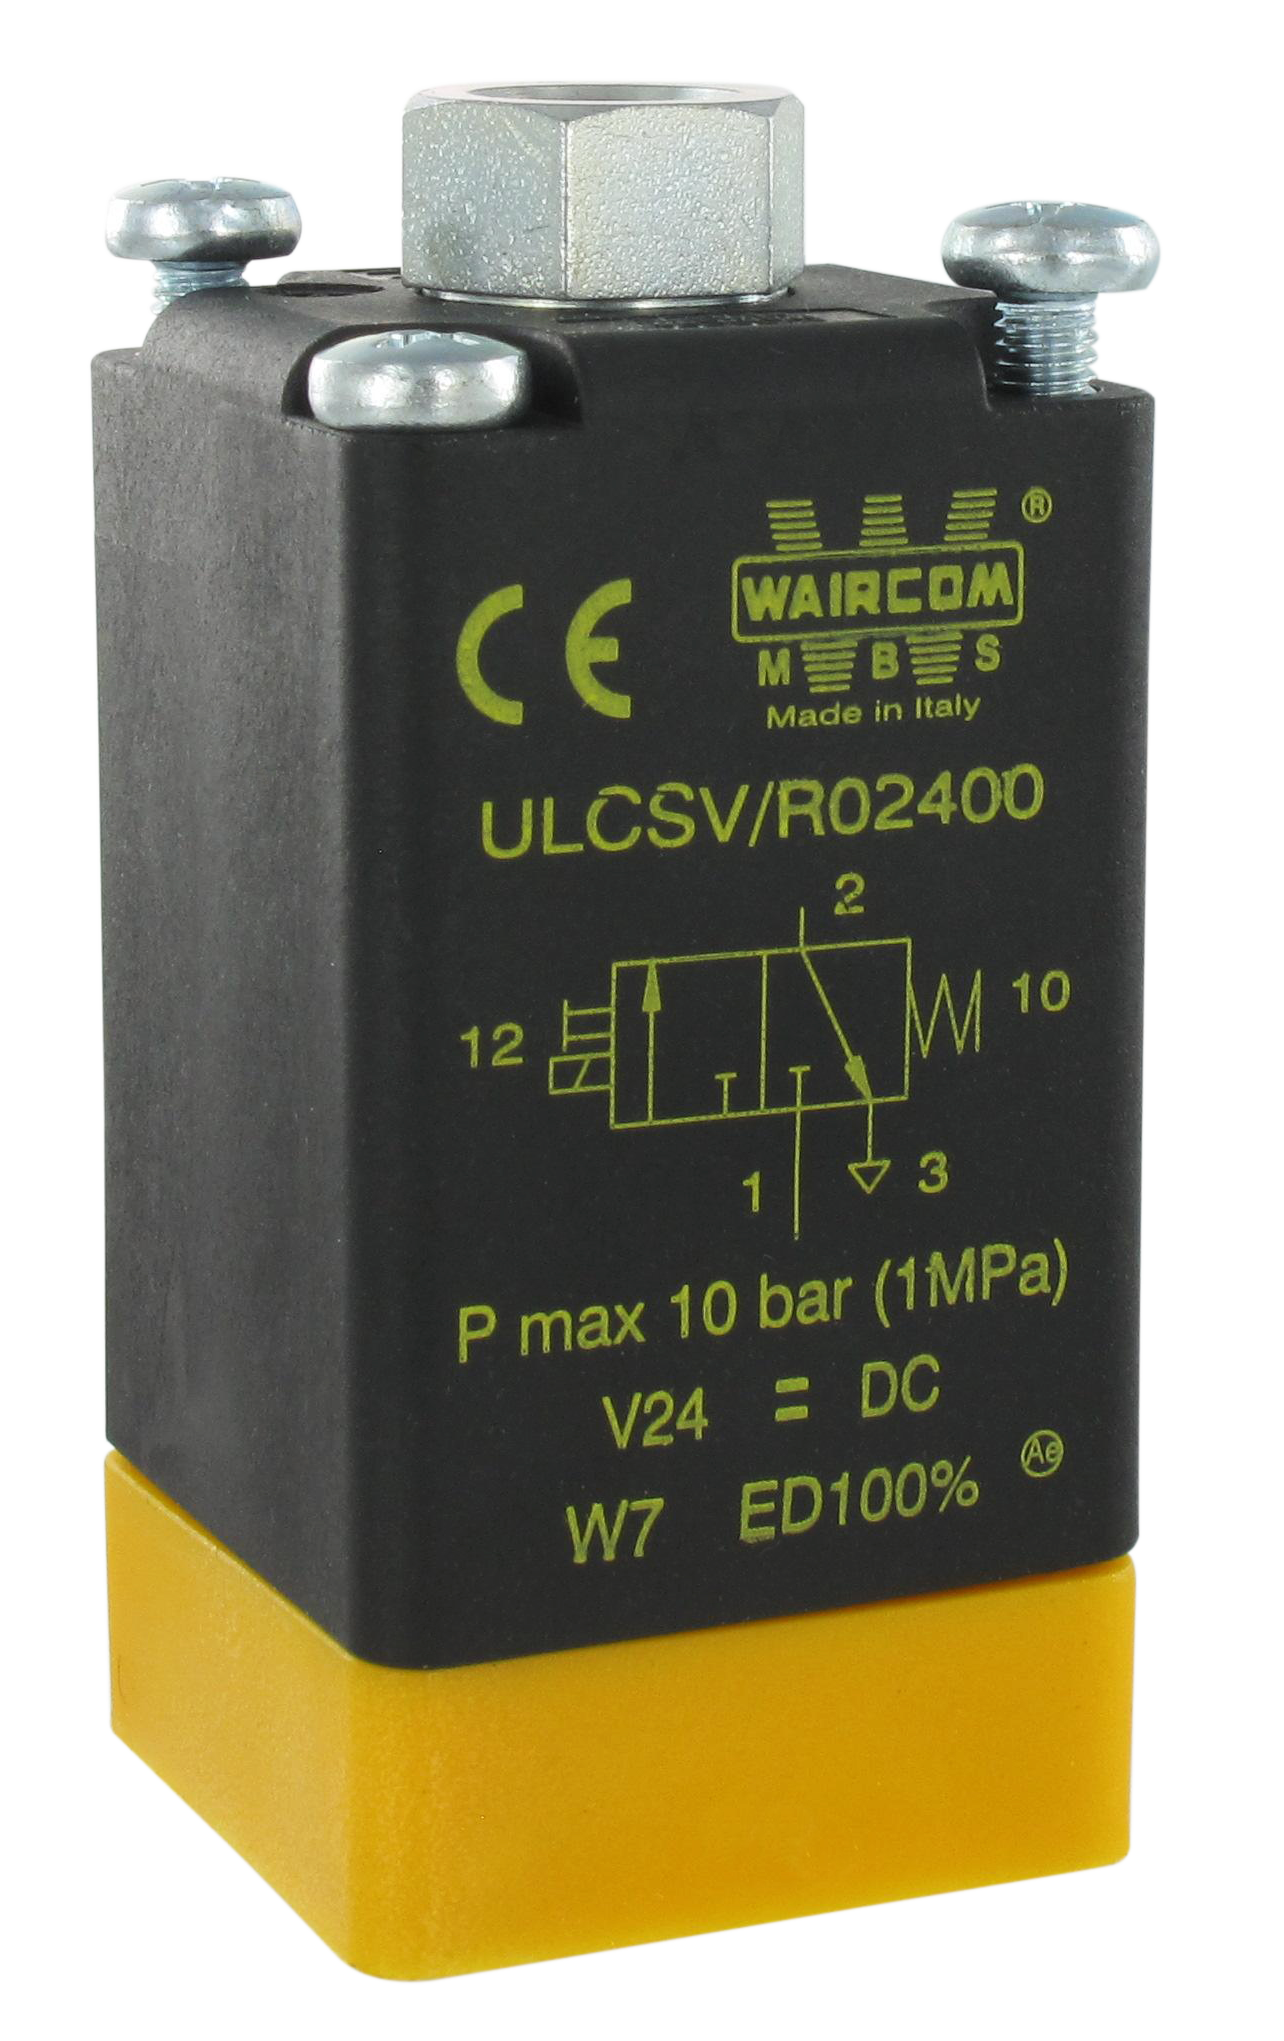 Electro-distributeur pneumatique 3/2 NF monostable 48VAC cde manuelle bistable UL - Electro-distributeurs à commande directe